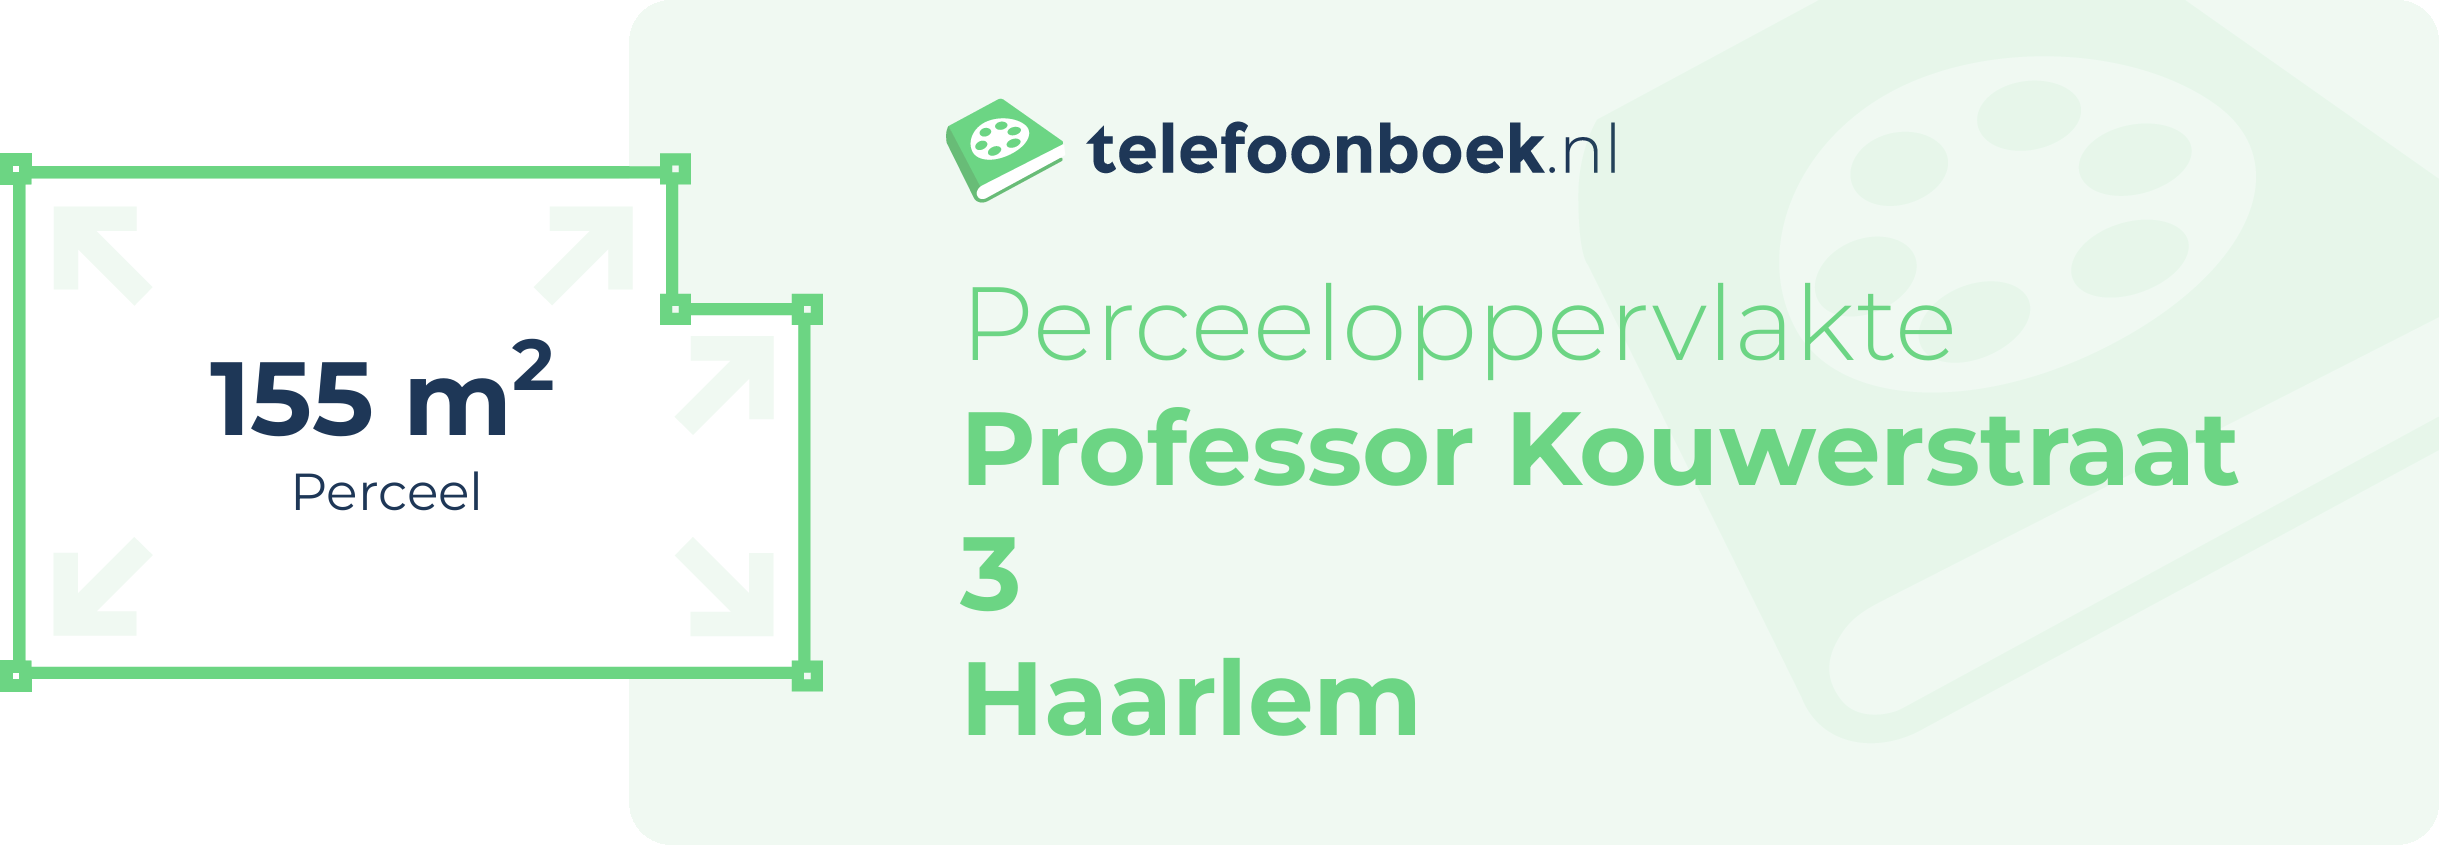 Perceeloppervlakte Professor Kouwerstraat 3 Haarlem